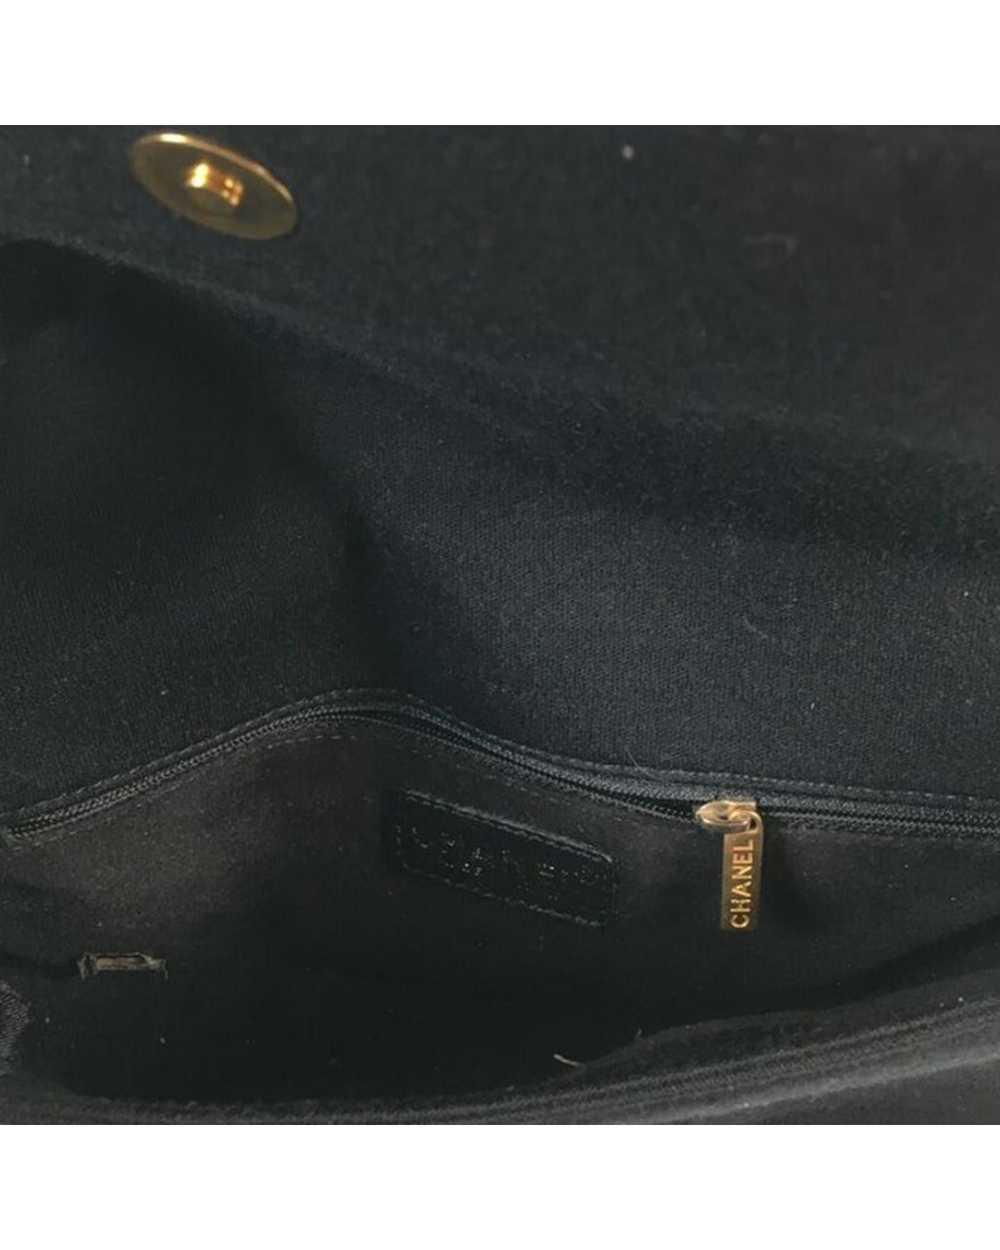 Chanel Chocolate Bar Flap Shoulder Bag - image 5